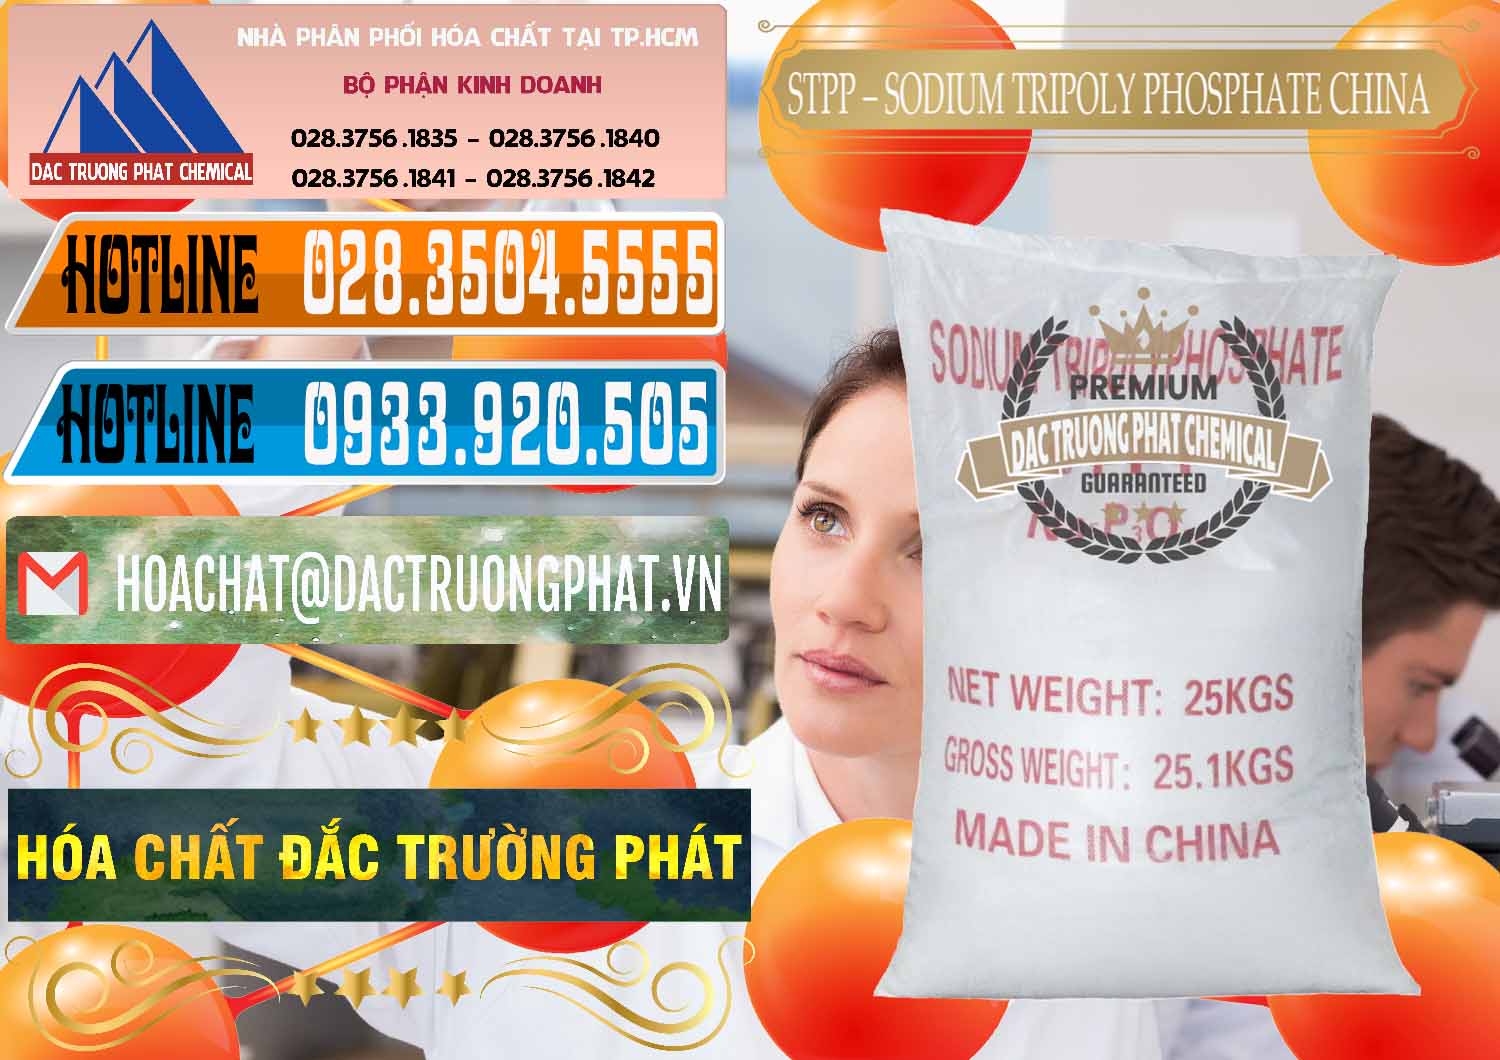 Cty bán - cung ứng Sodium Tripoly Phosphate - STPP 96% Chữ Đỏ Trung Quốc China - 0155 - Đơn vị chuyên bán và phân phối hóa chất tại TP.HCM - stmp.net